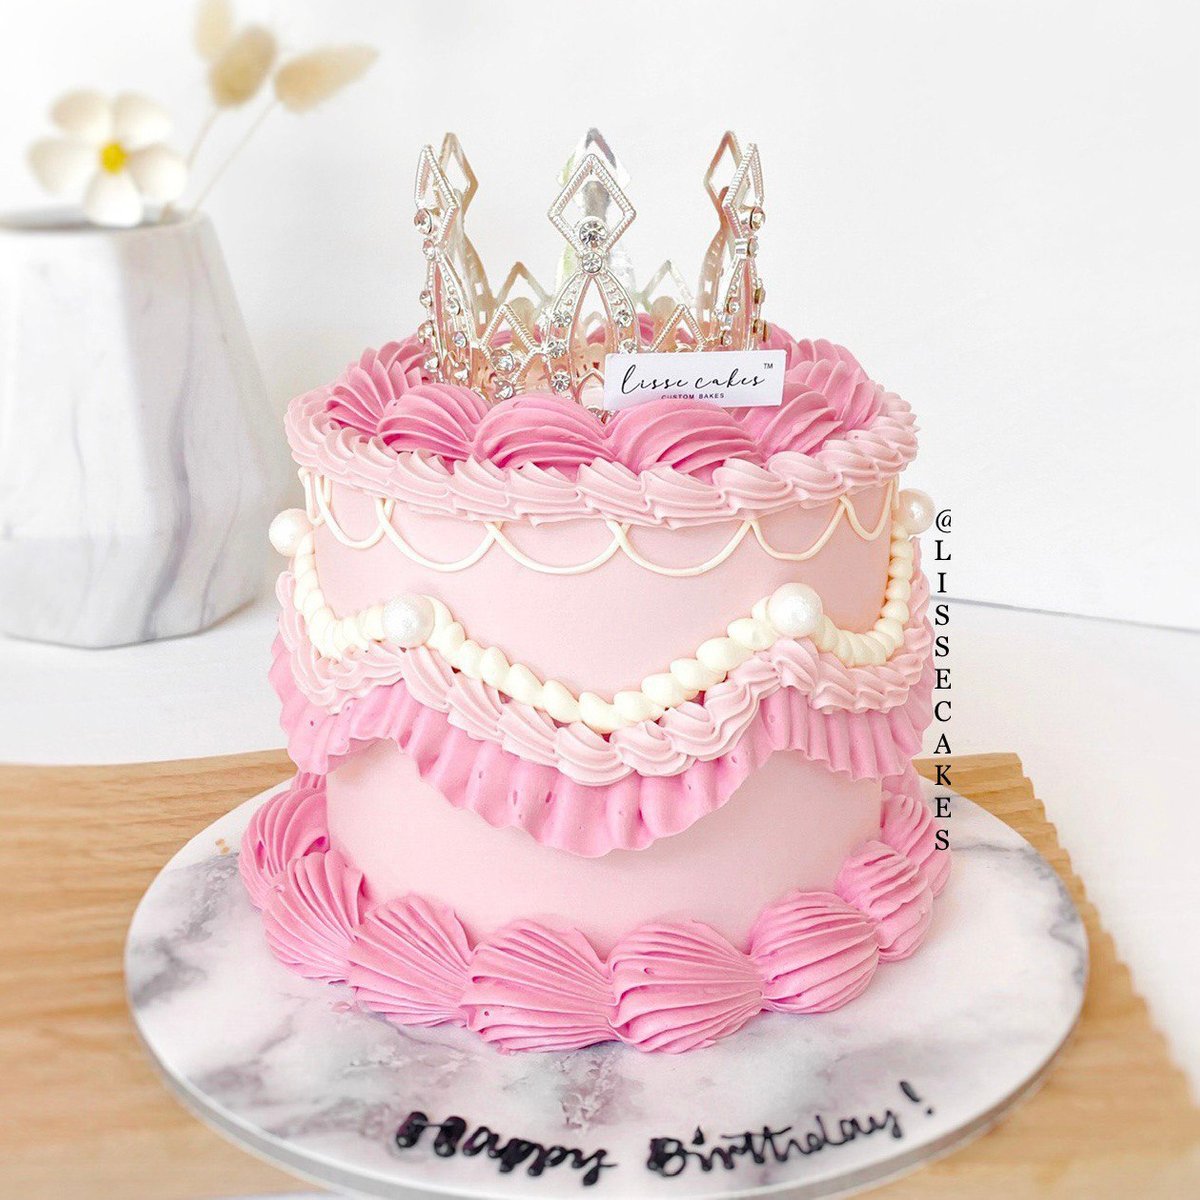 Disney Princess Cake | The Sugar Bakery-sgquangbinhtourist.com.vn